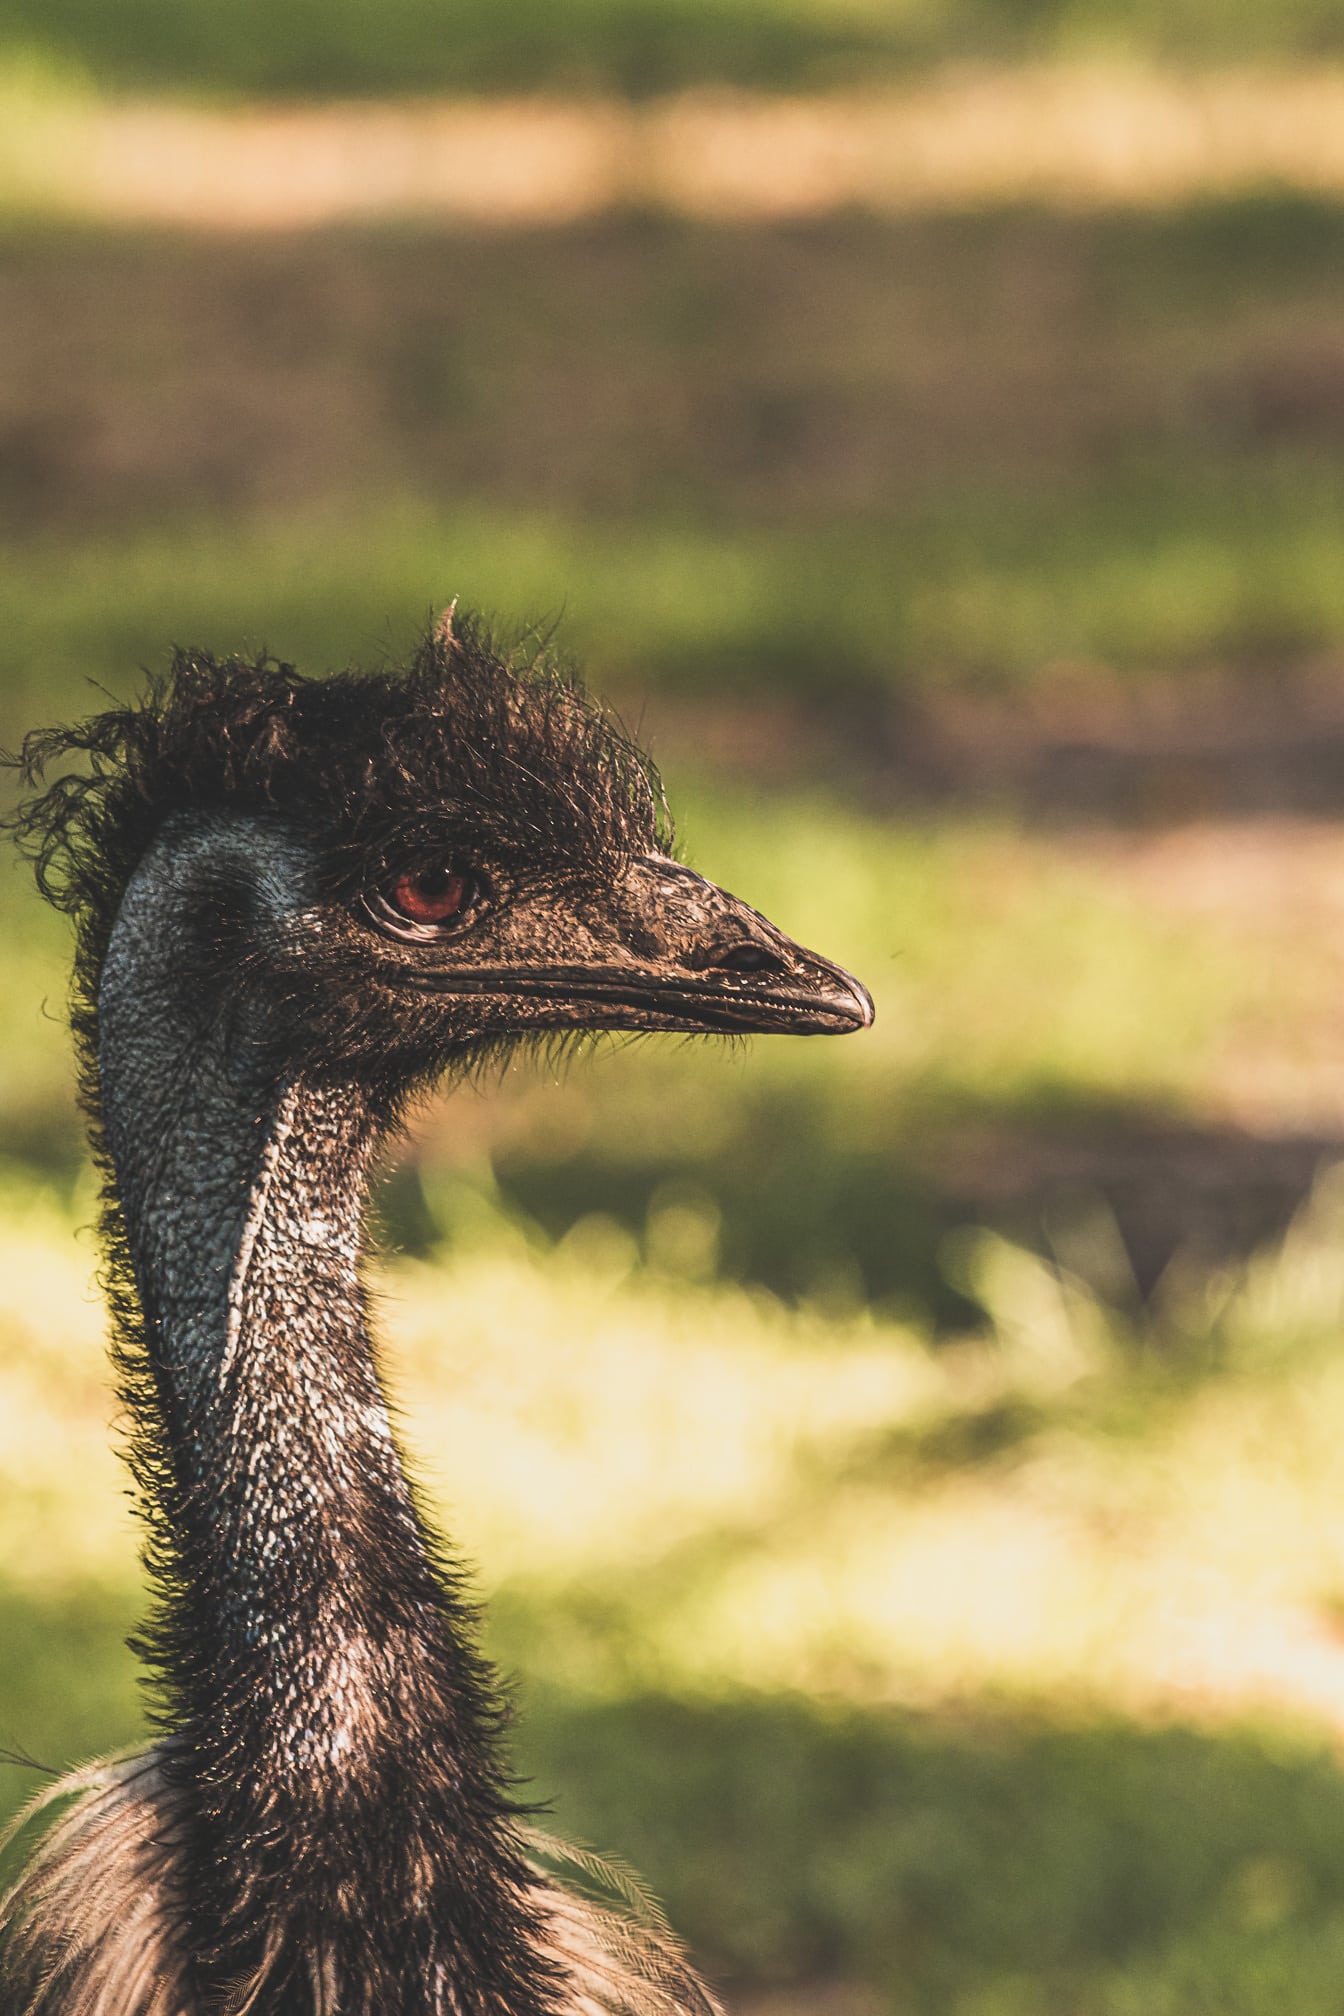 Emu fugl (Dromaius novaehollandiae) nærbillede af hovedet set fra siden